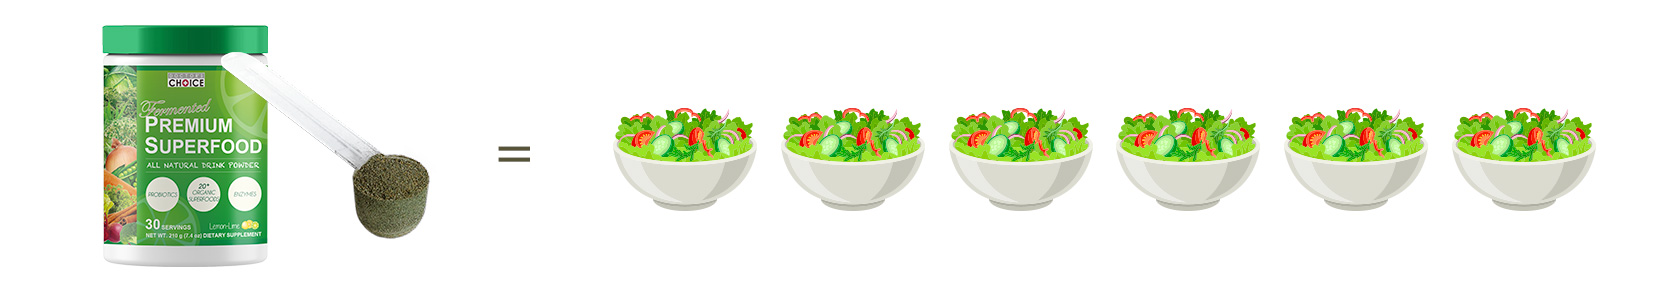 ６皿分のオーガニック野菜